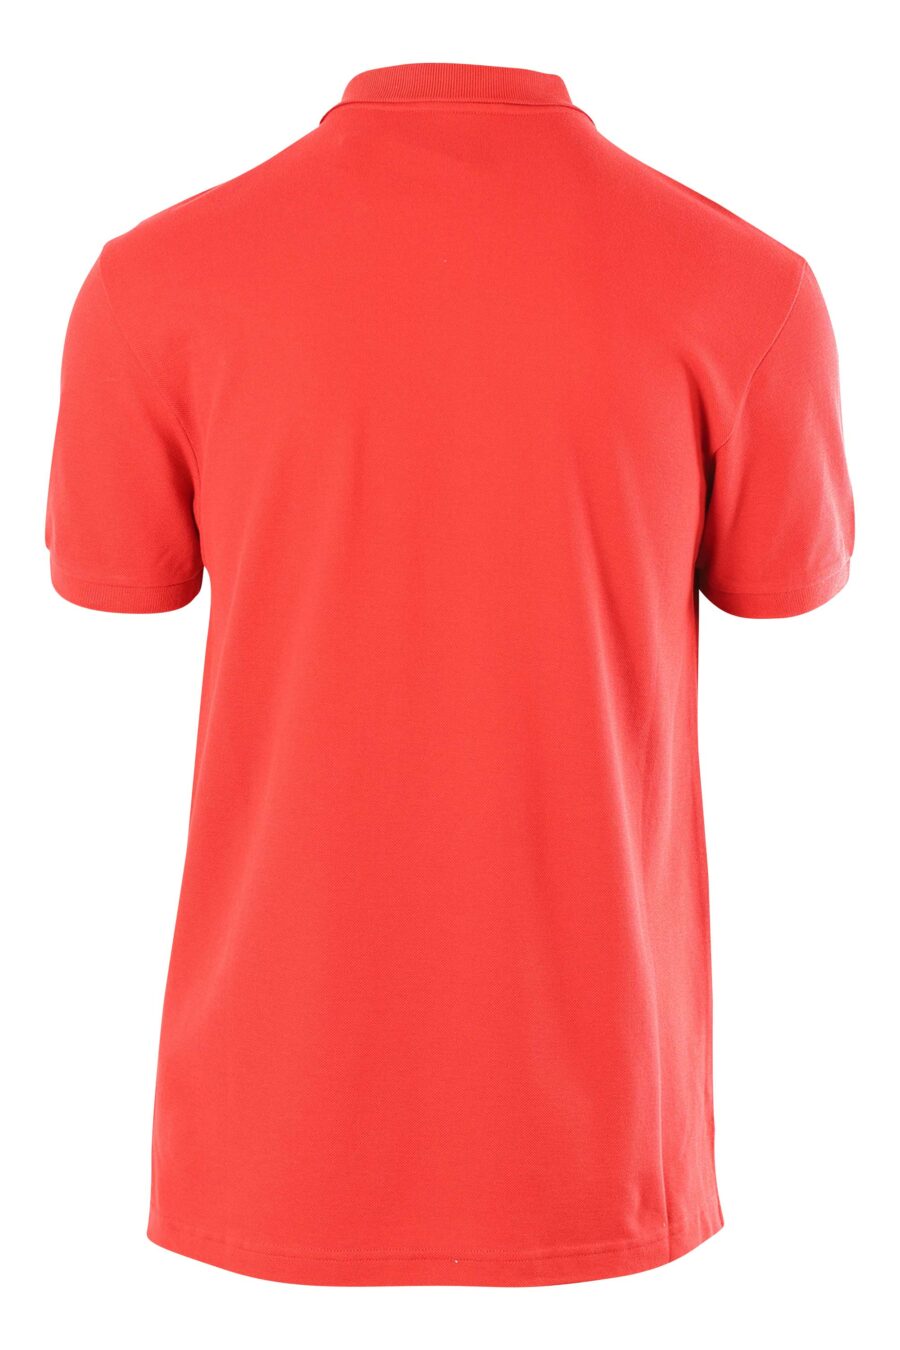 Rotes Poloshirt mit Mini-Logo "milano" - 889316176728 2